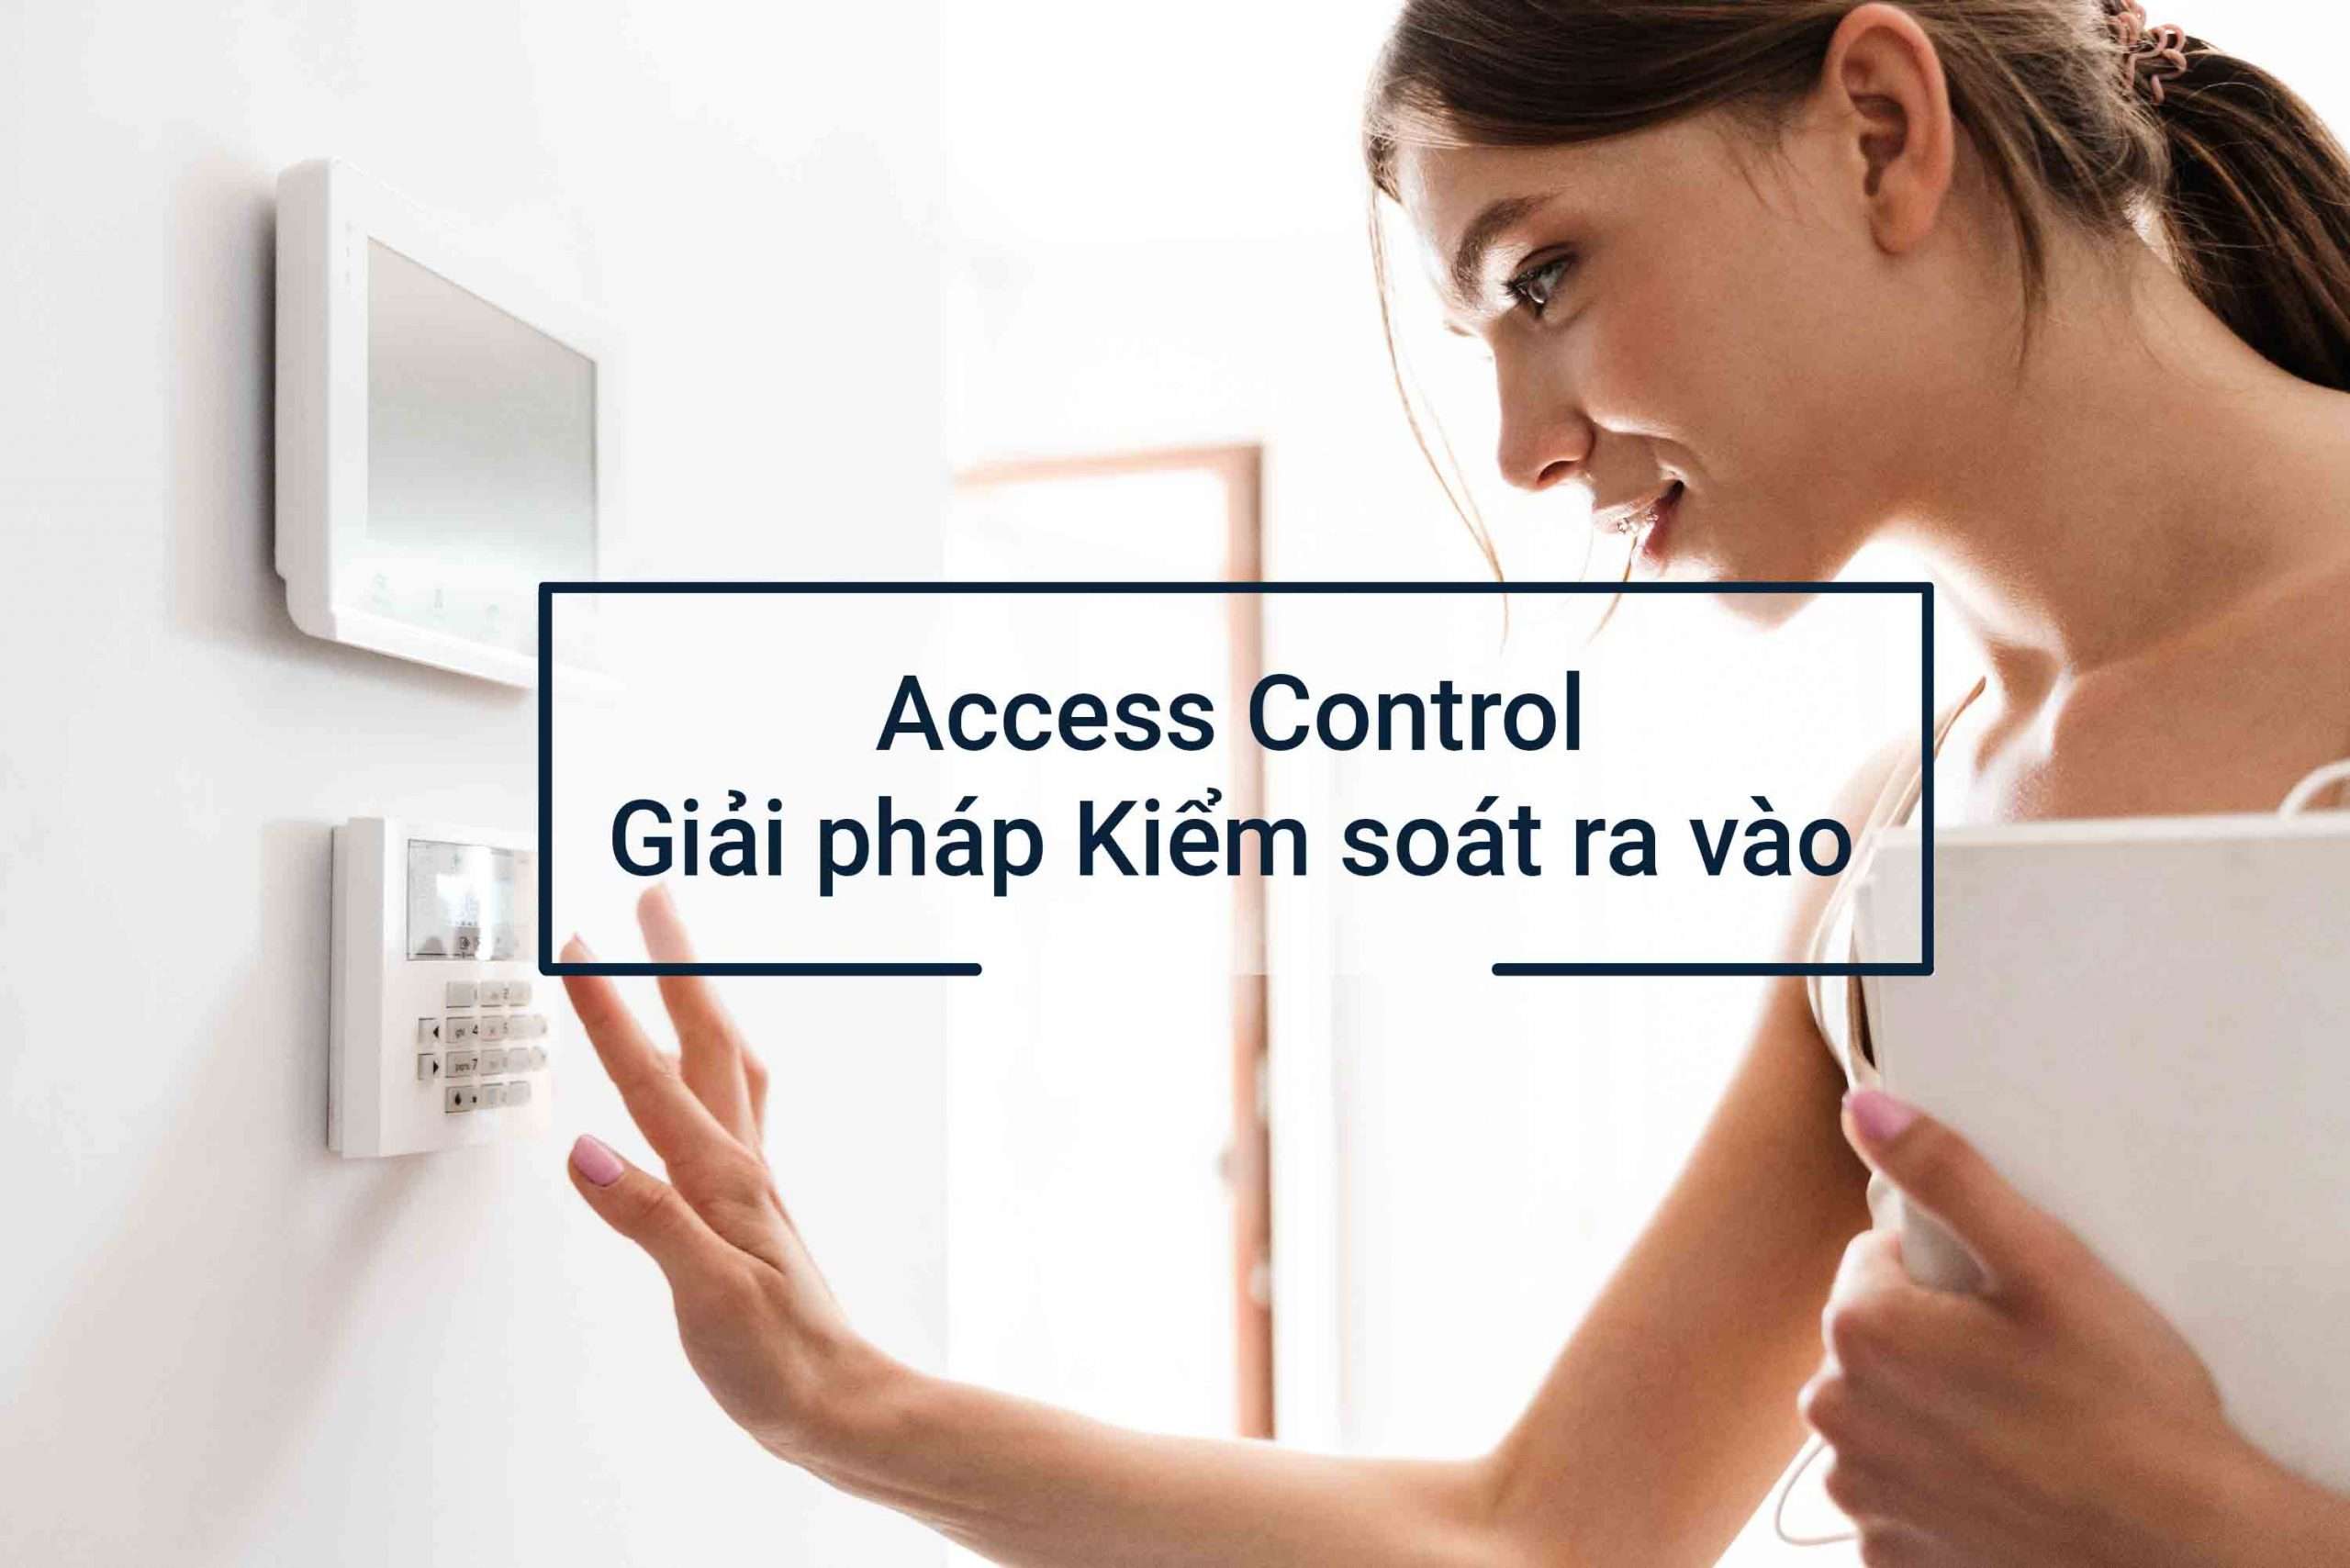 Giải pháp Kiểm soát ra vào – Access Control